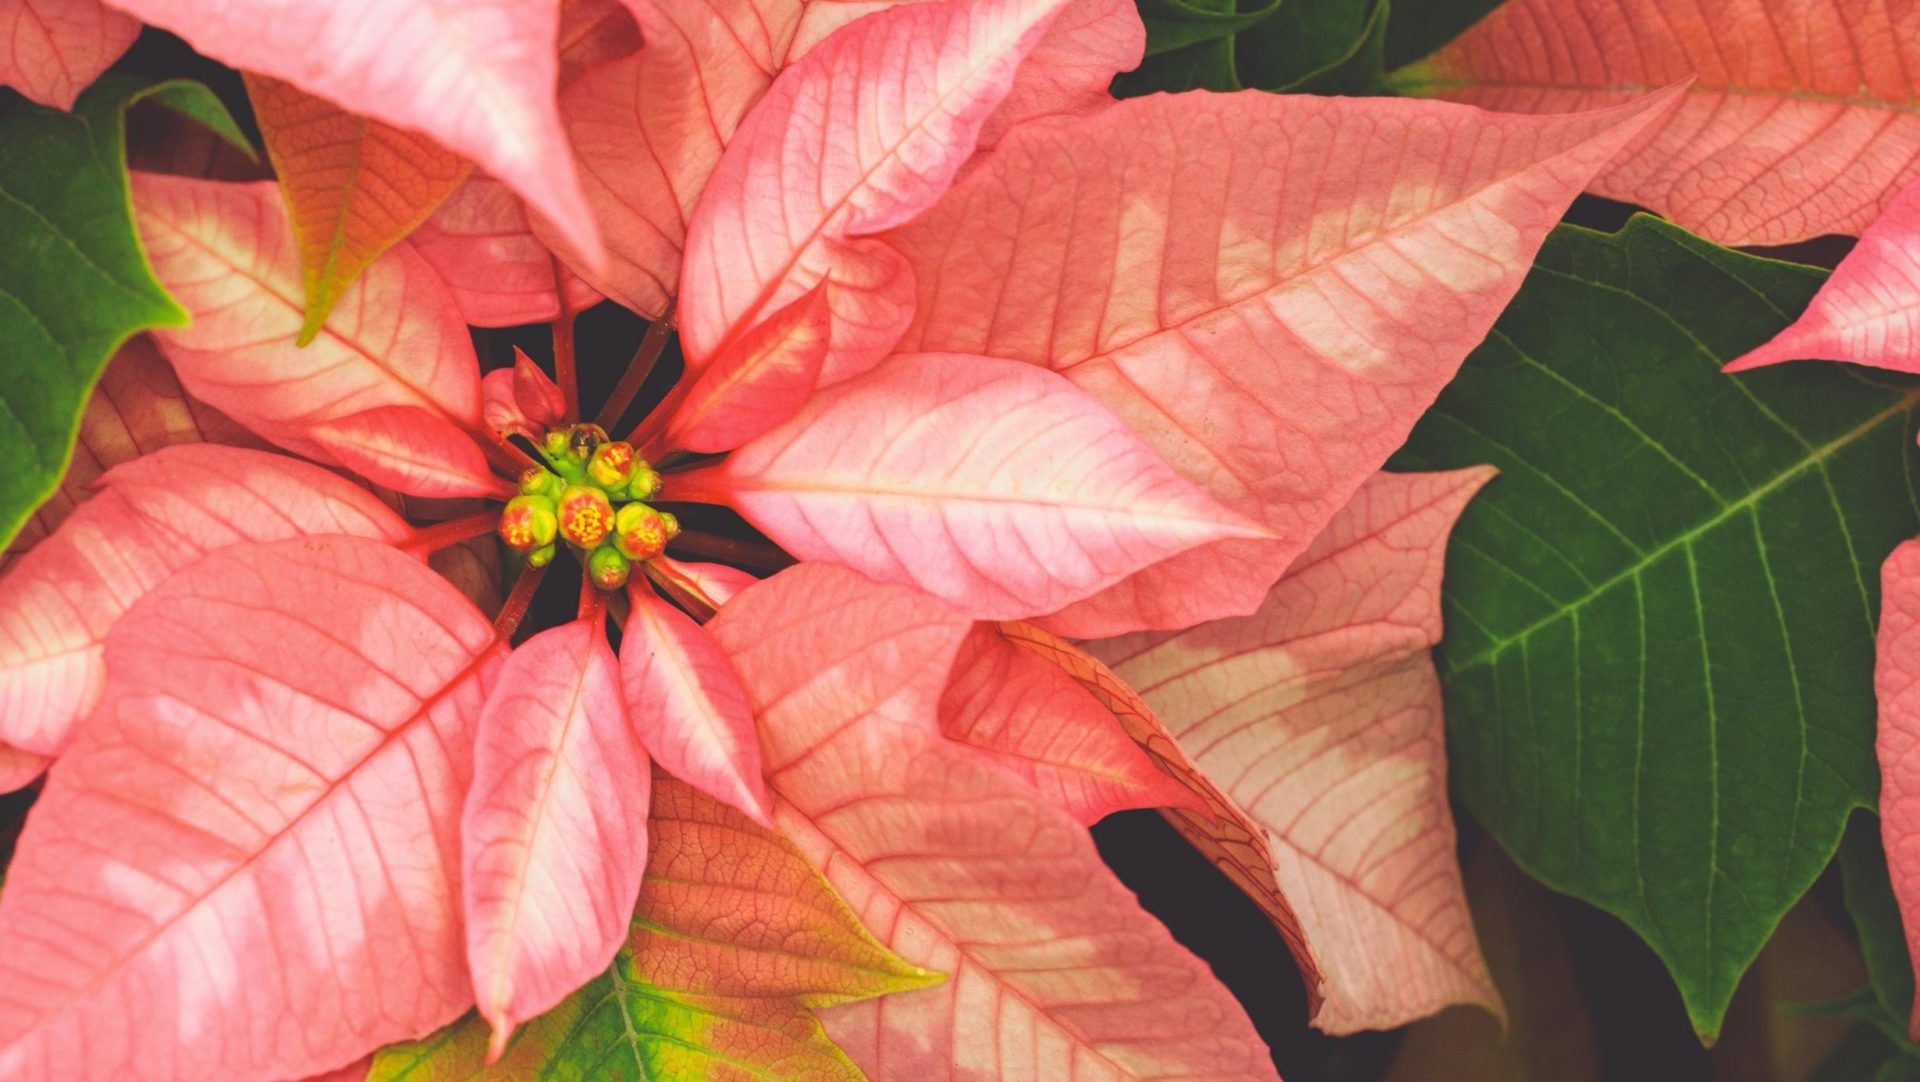 L'Euphorbia Pulcherrima nota come Stella di Natale o Poinsettia è la pianta più apprezzata durante il periodo natalizio.